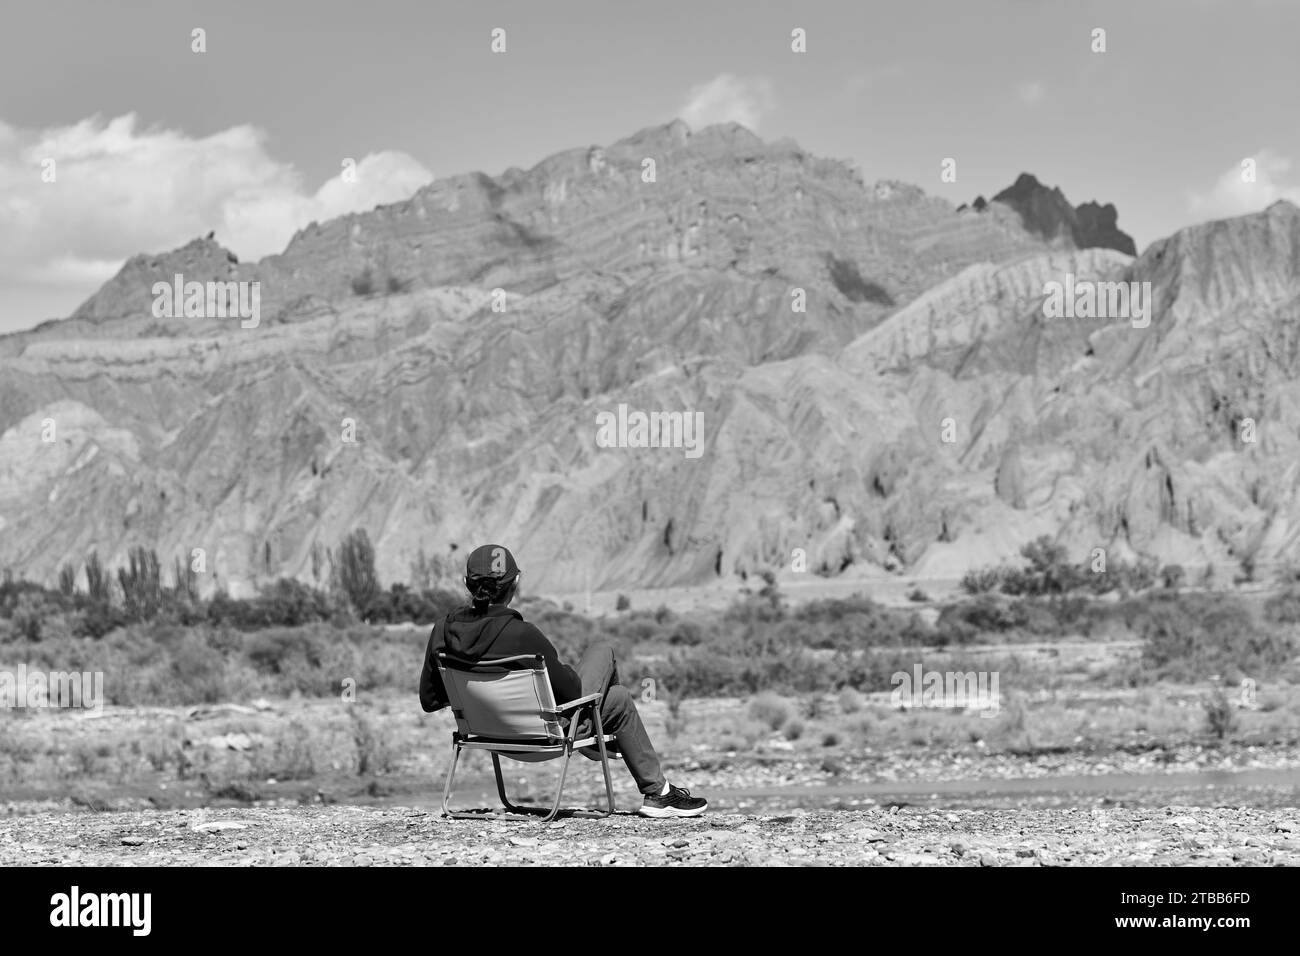 Vista trasera del hombre asiático sentado en silla en el lecho del río mirando los acantilados del cañón en Xinjiang, China, blanco y negro Foto de stock